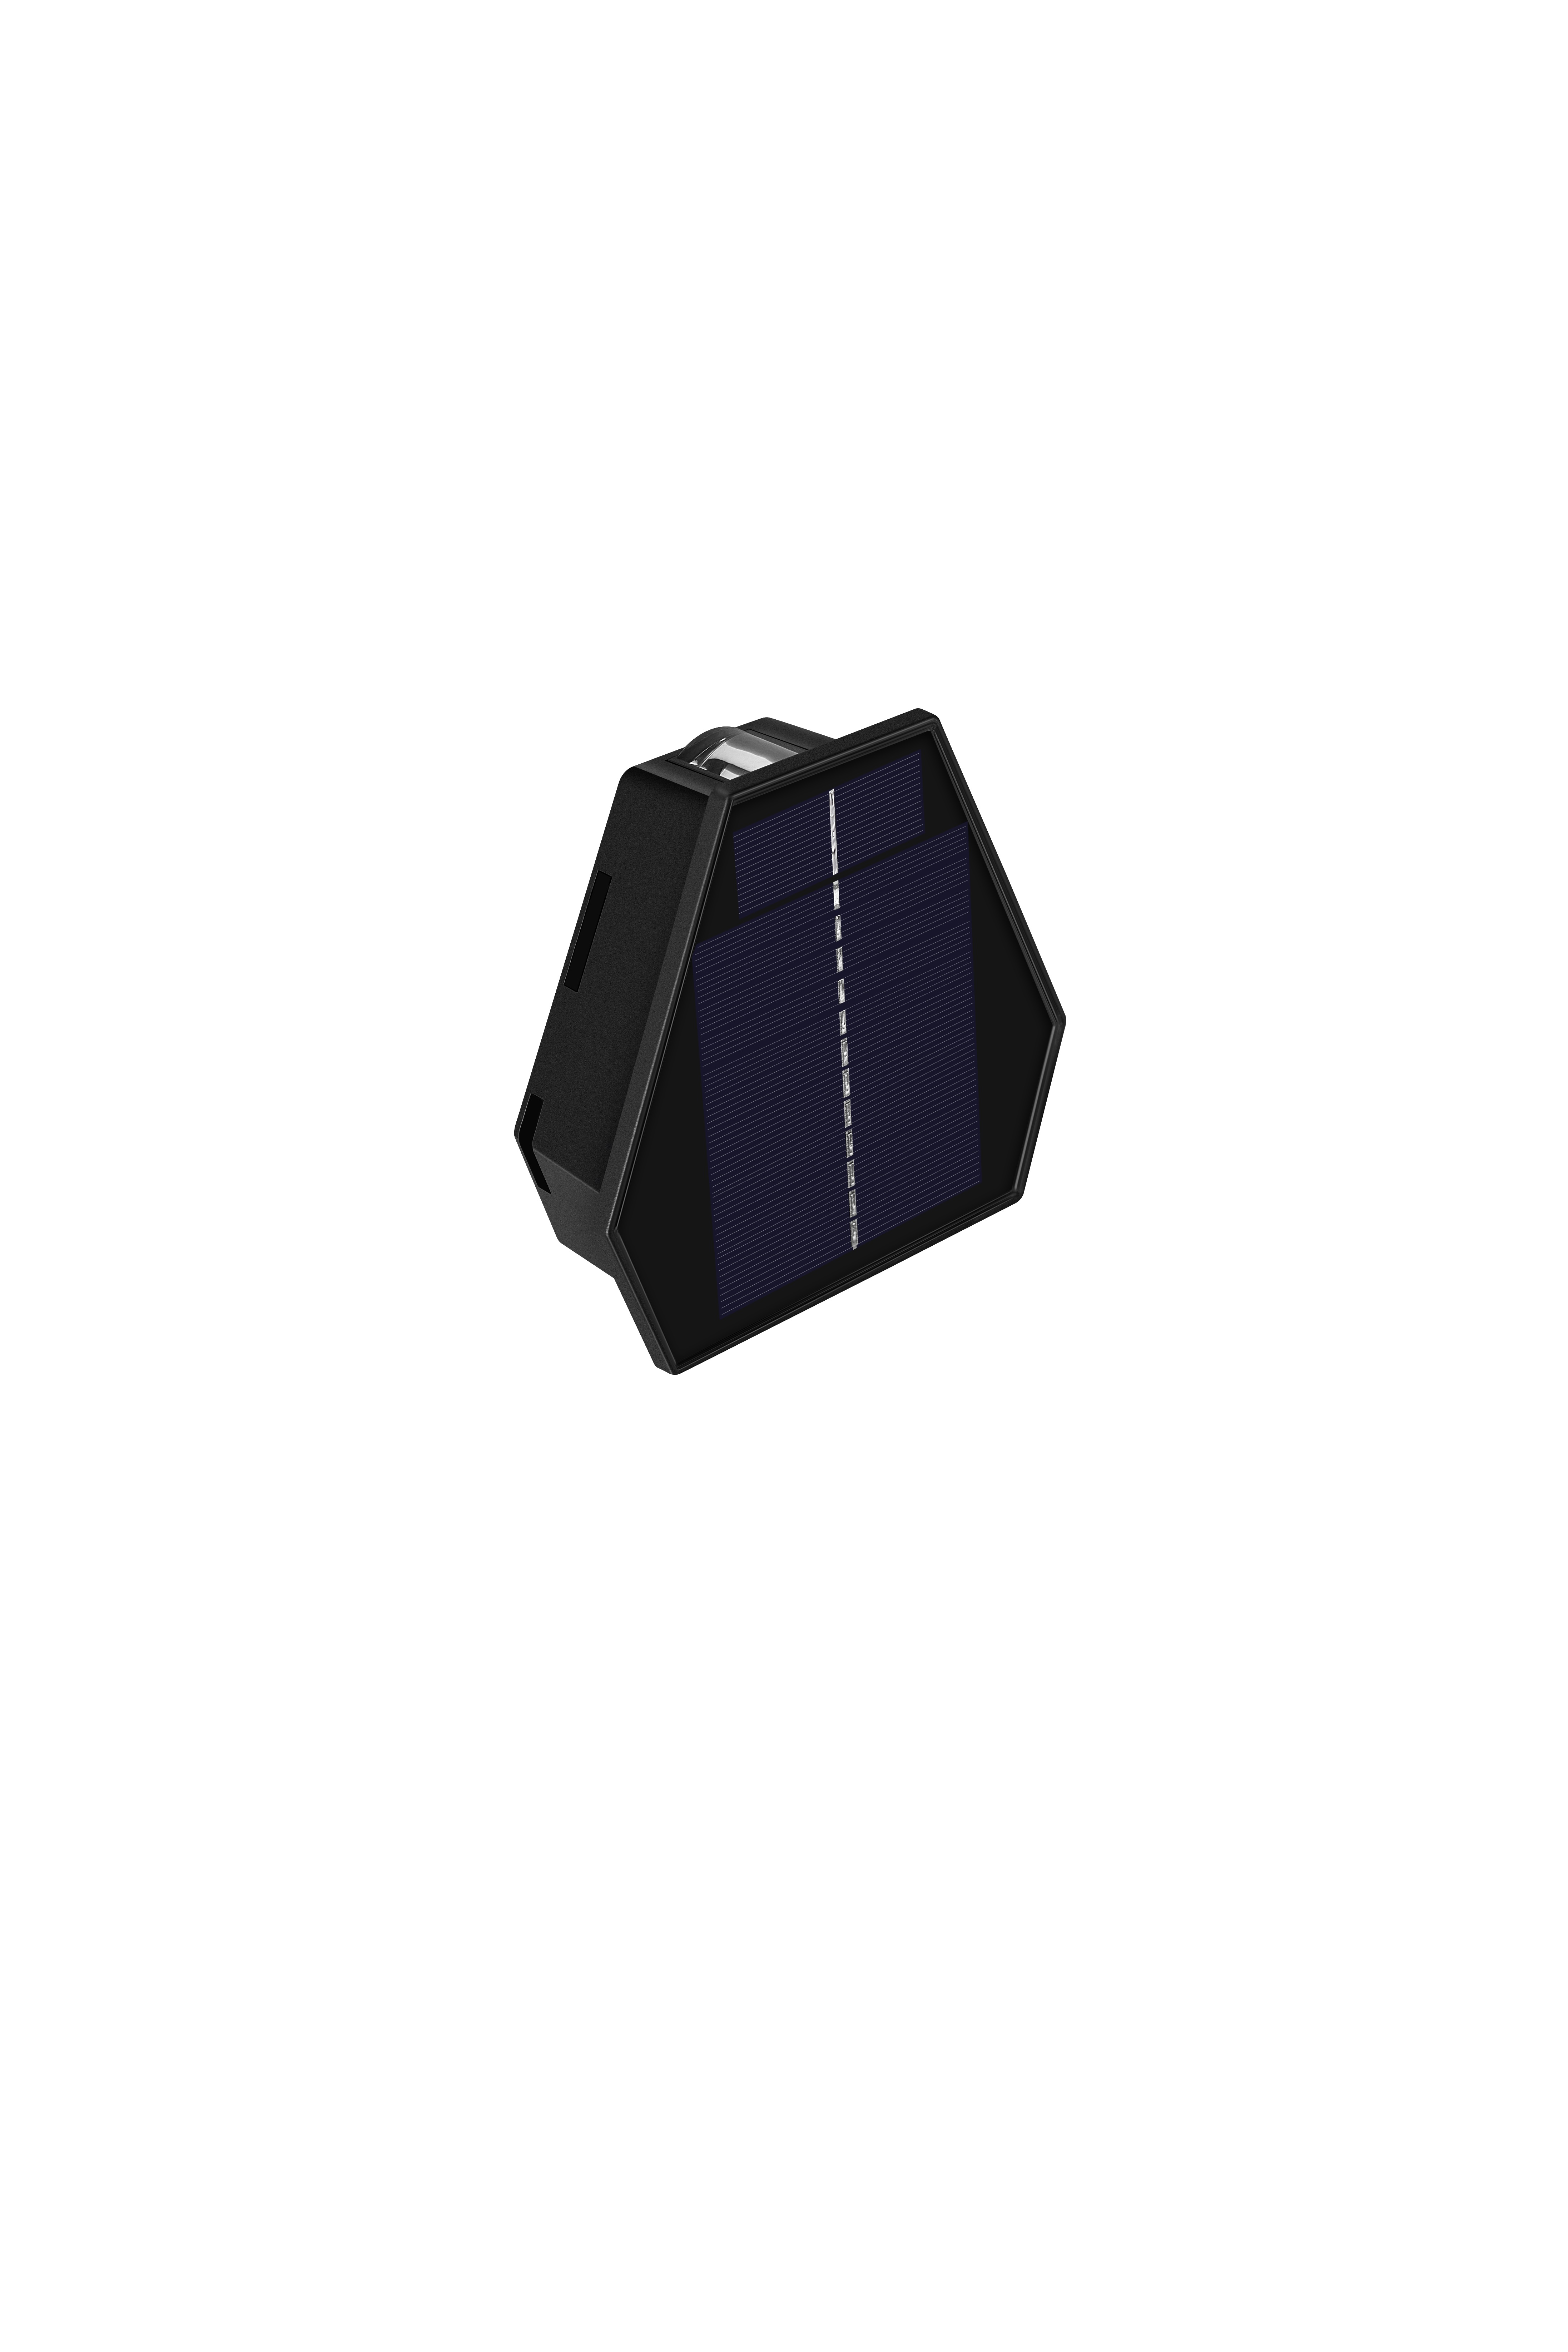 Venkovní solární nástěnné LED osvětlení WALL-2 se soumrakovým čidlem změna barvy světla CCT IMMAX 08488L